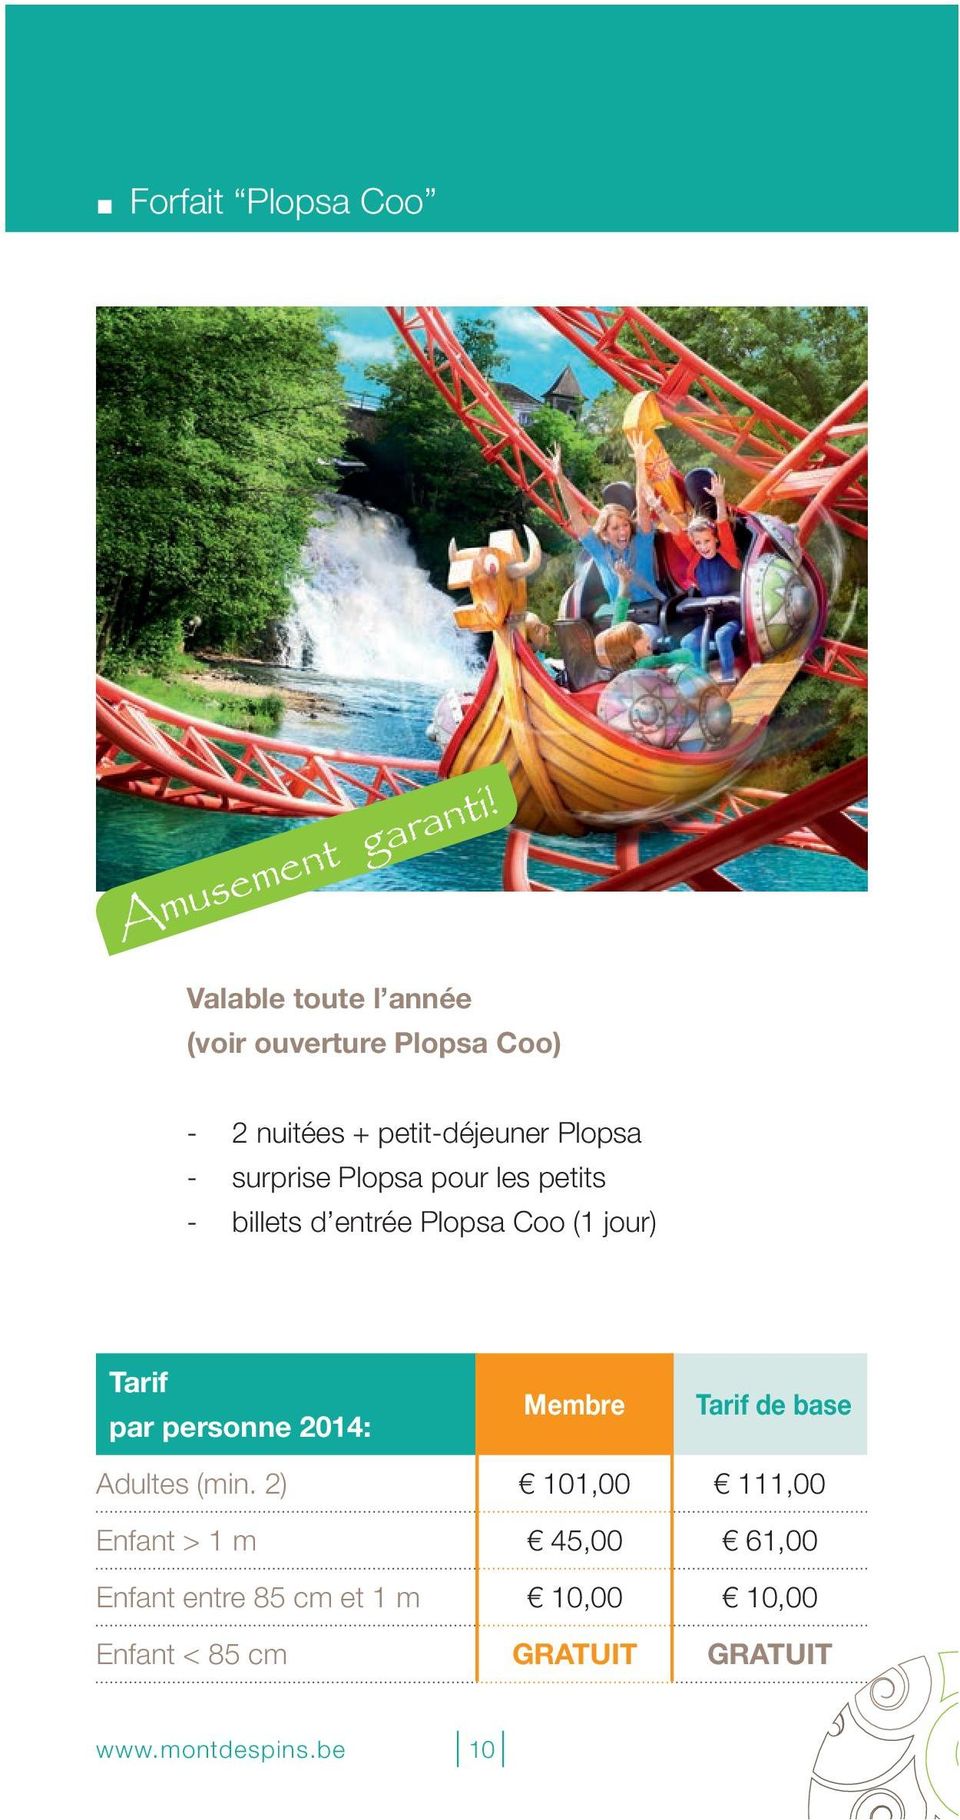 Plopsa pour les petits - billets d entrée Plopsa Coo (1 jour) Tarif par personne 2014: Membre